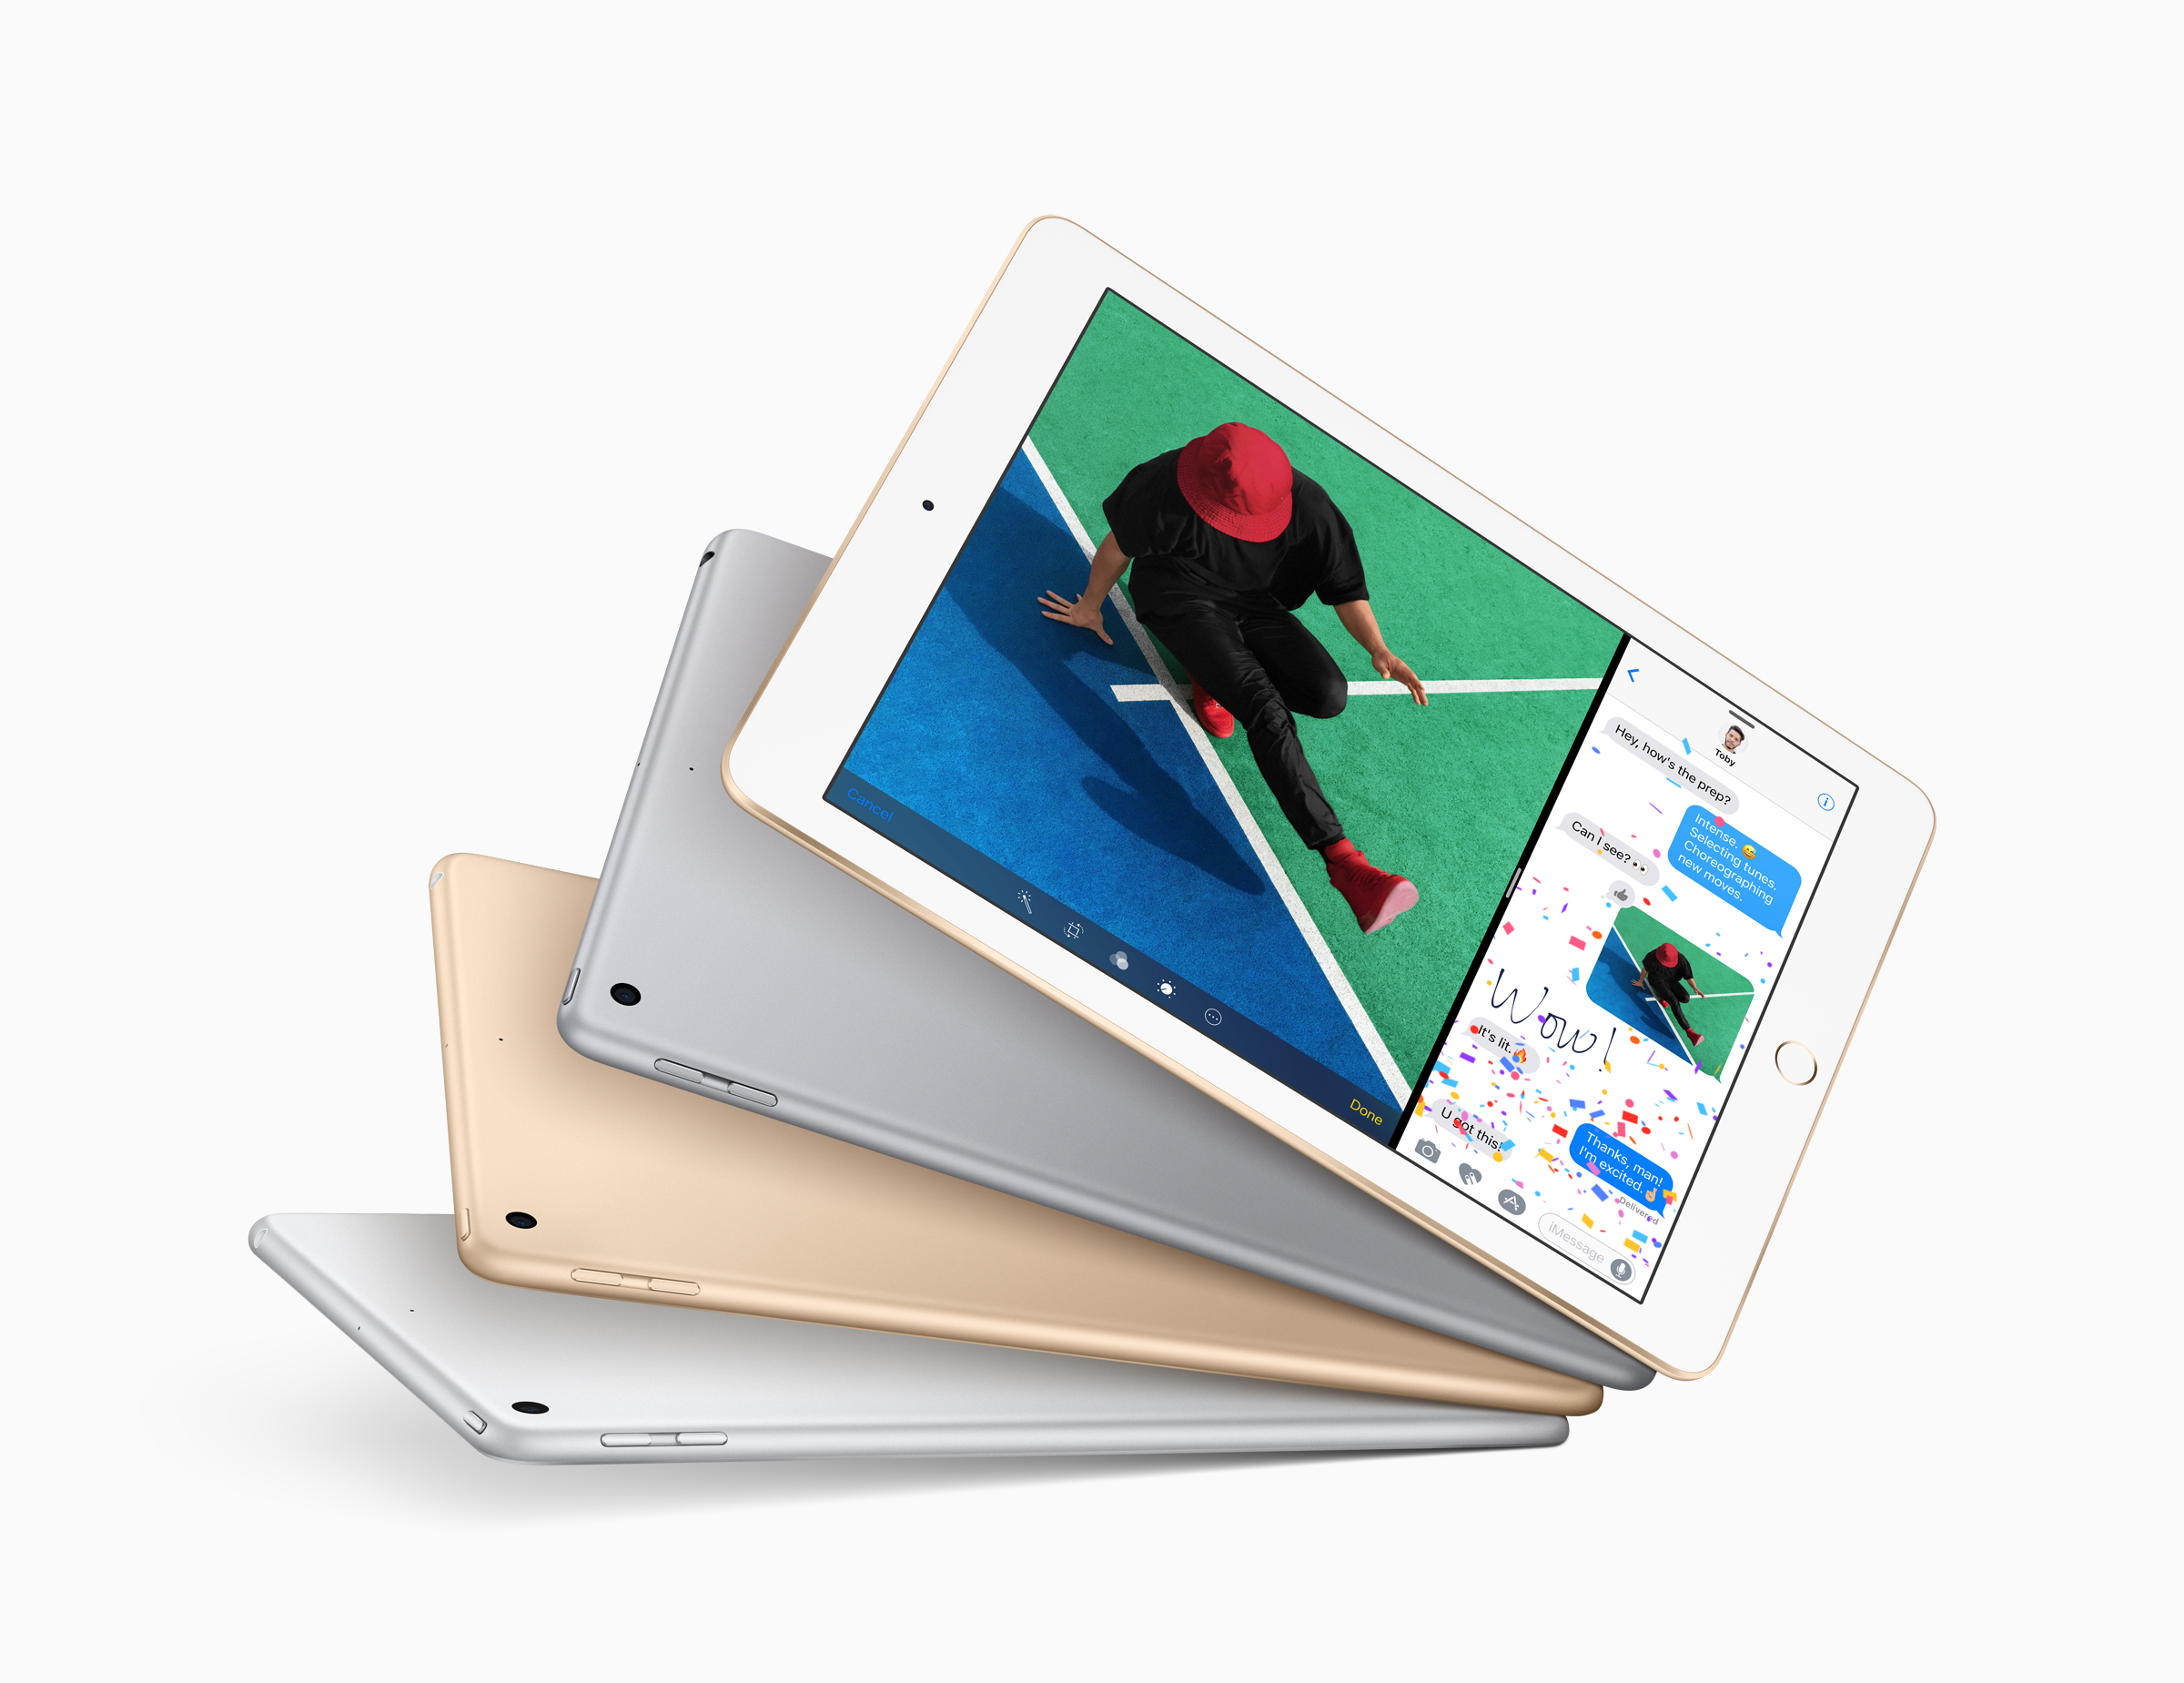 iPad pete generacije, 32 GB, Wi-Fi + Cellular, snižen sa 4198,95 kuna na 2099,48 kune
<br>
<br>
Premda se radi iPadu prošle generacije, dakle modelu iz 2017. godine, i dalje se radi o sasvim solidnom i brzom tabletnom računalu. Ustvari, ako želite tablet, zbog iznimno slabe konkurencije, iPad je ustvari i jedina realna opcija. Prošlogodišnji procesor je i dalje snažan, te dovoljan za sve zadaće, a dobra karakteristika ovog sniženog modela je i mogućnost povezivanja s mobilnim internetom.
<br>
<br>
Dostupne su u ponudi <a href="https://www.hgshop.hr/tablet-apple-ipad-9-7-wi-fi-cellular-32gb-silver-5-generacija-mp1l2hc-a/proizvod/220009"><b>HG Spota</b></a>